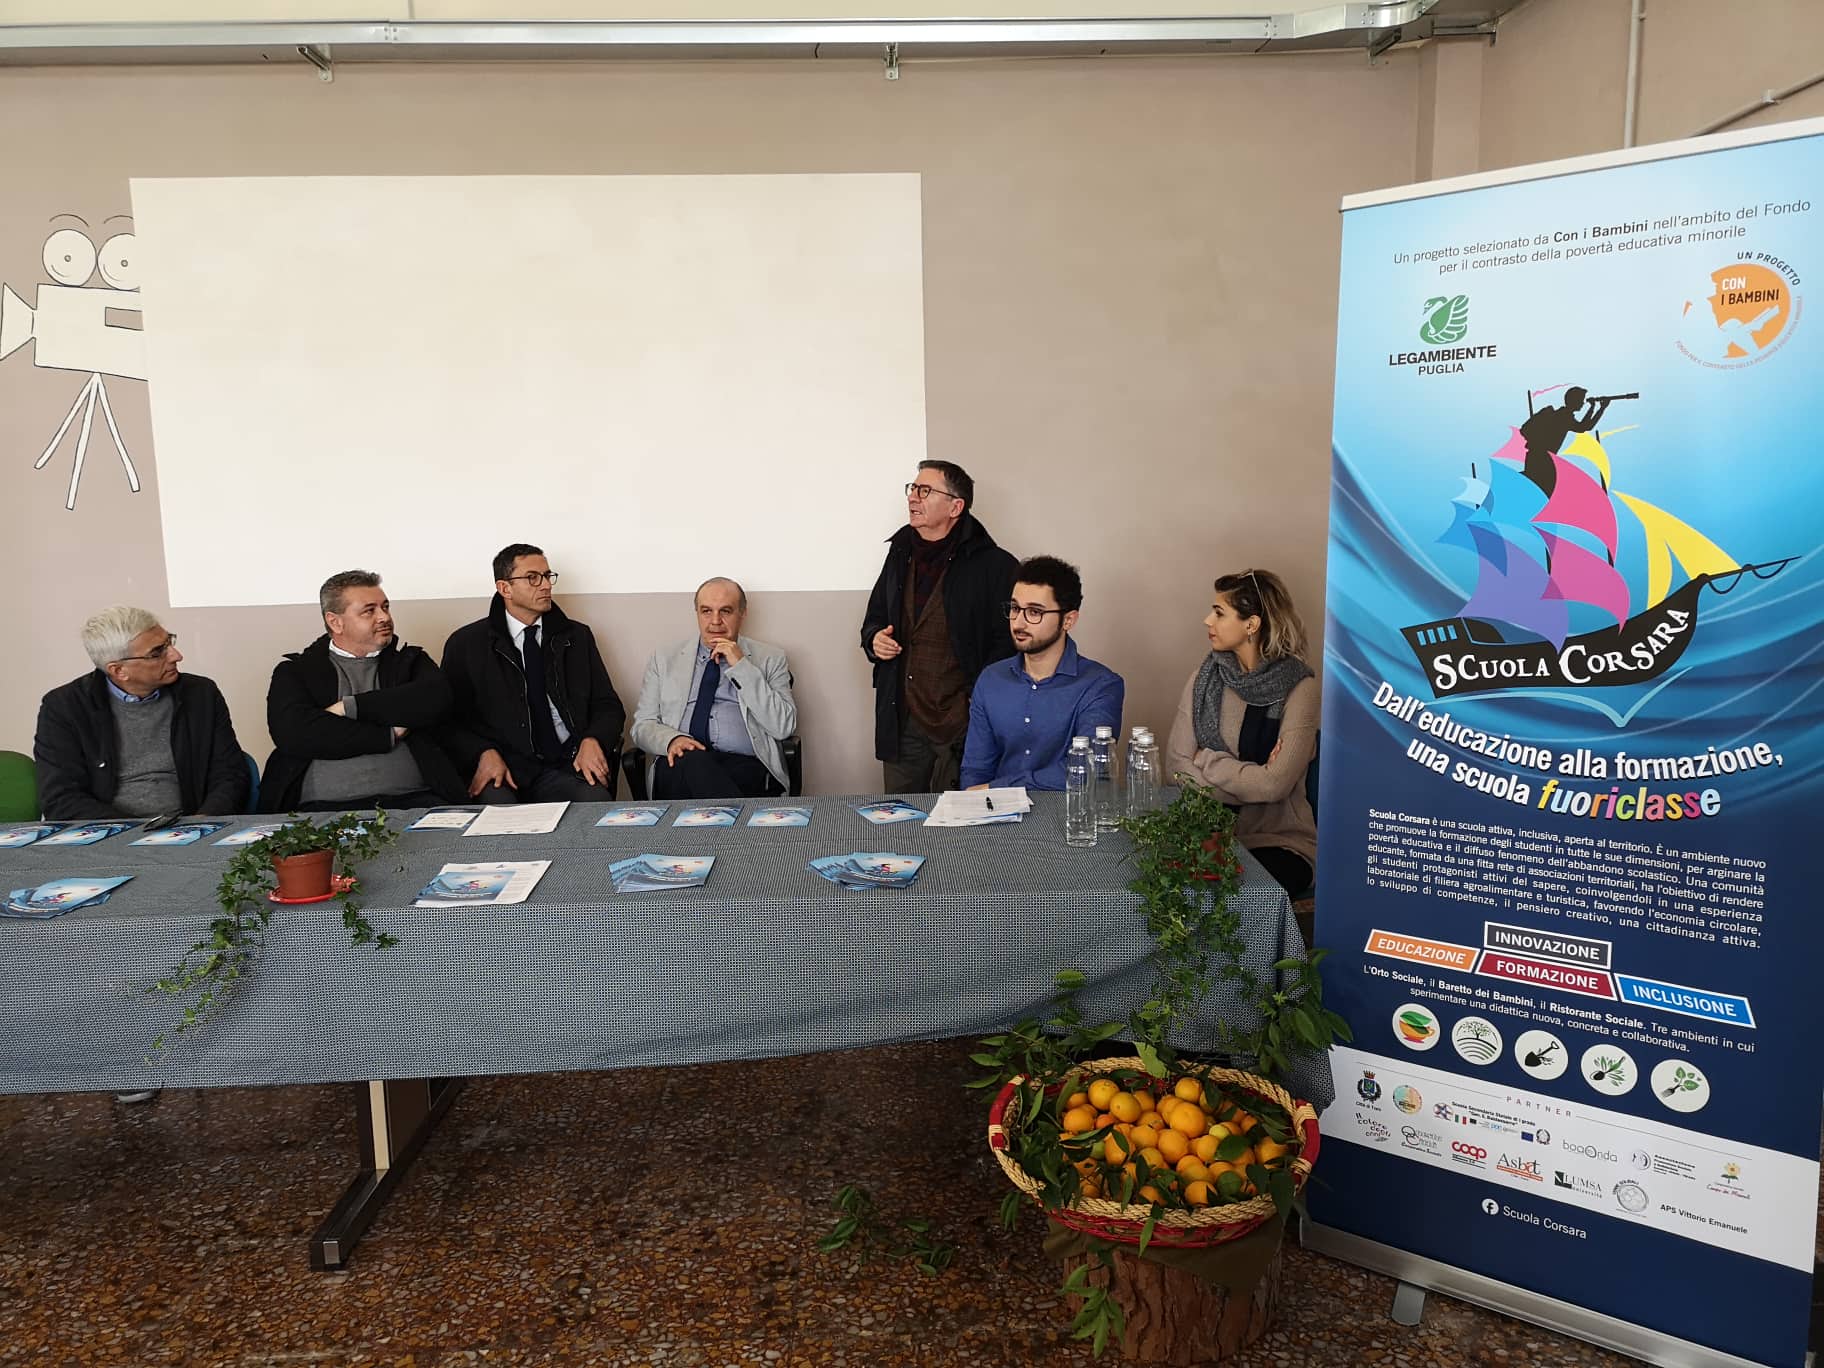 Presentazione progetto "Scuola Corsara" a Trani